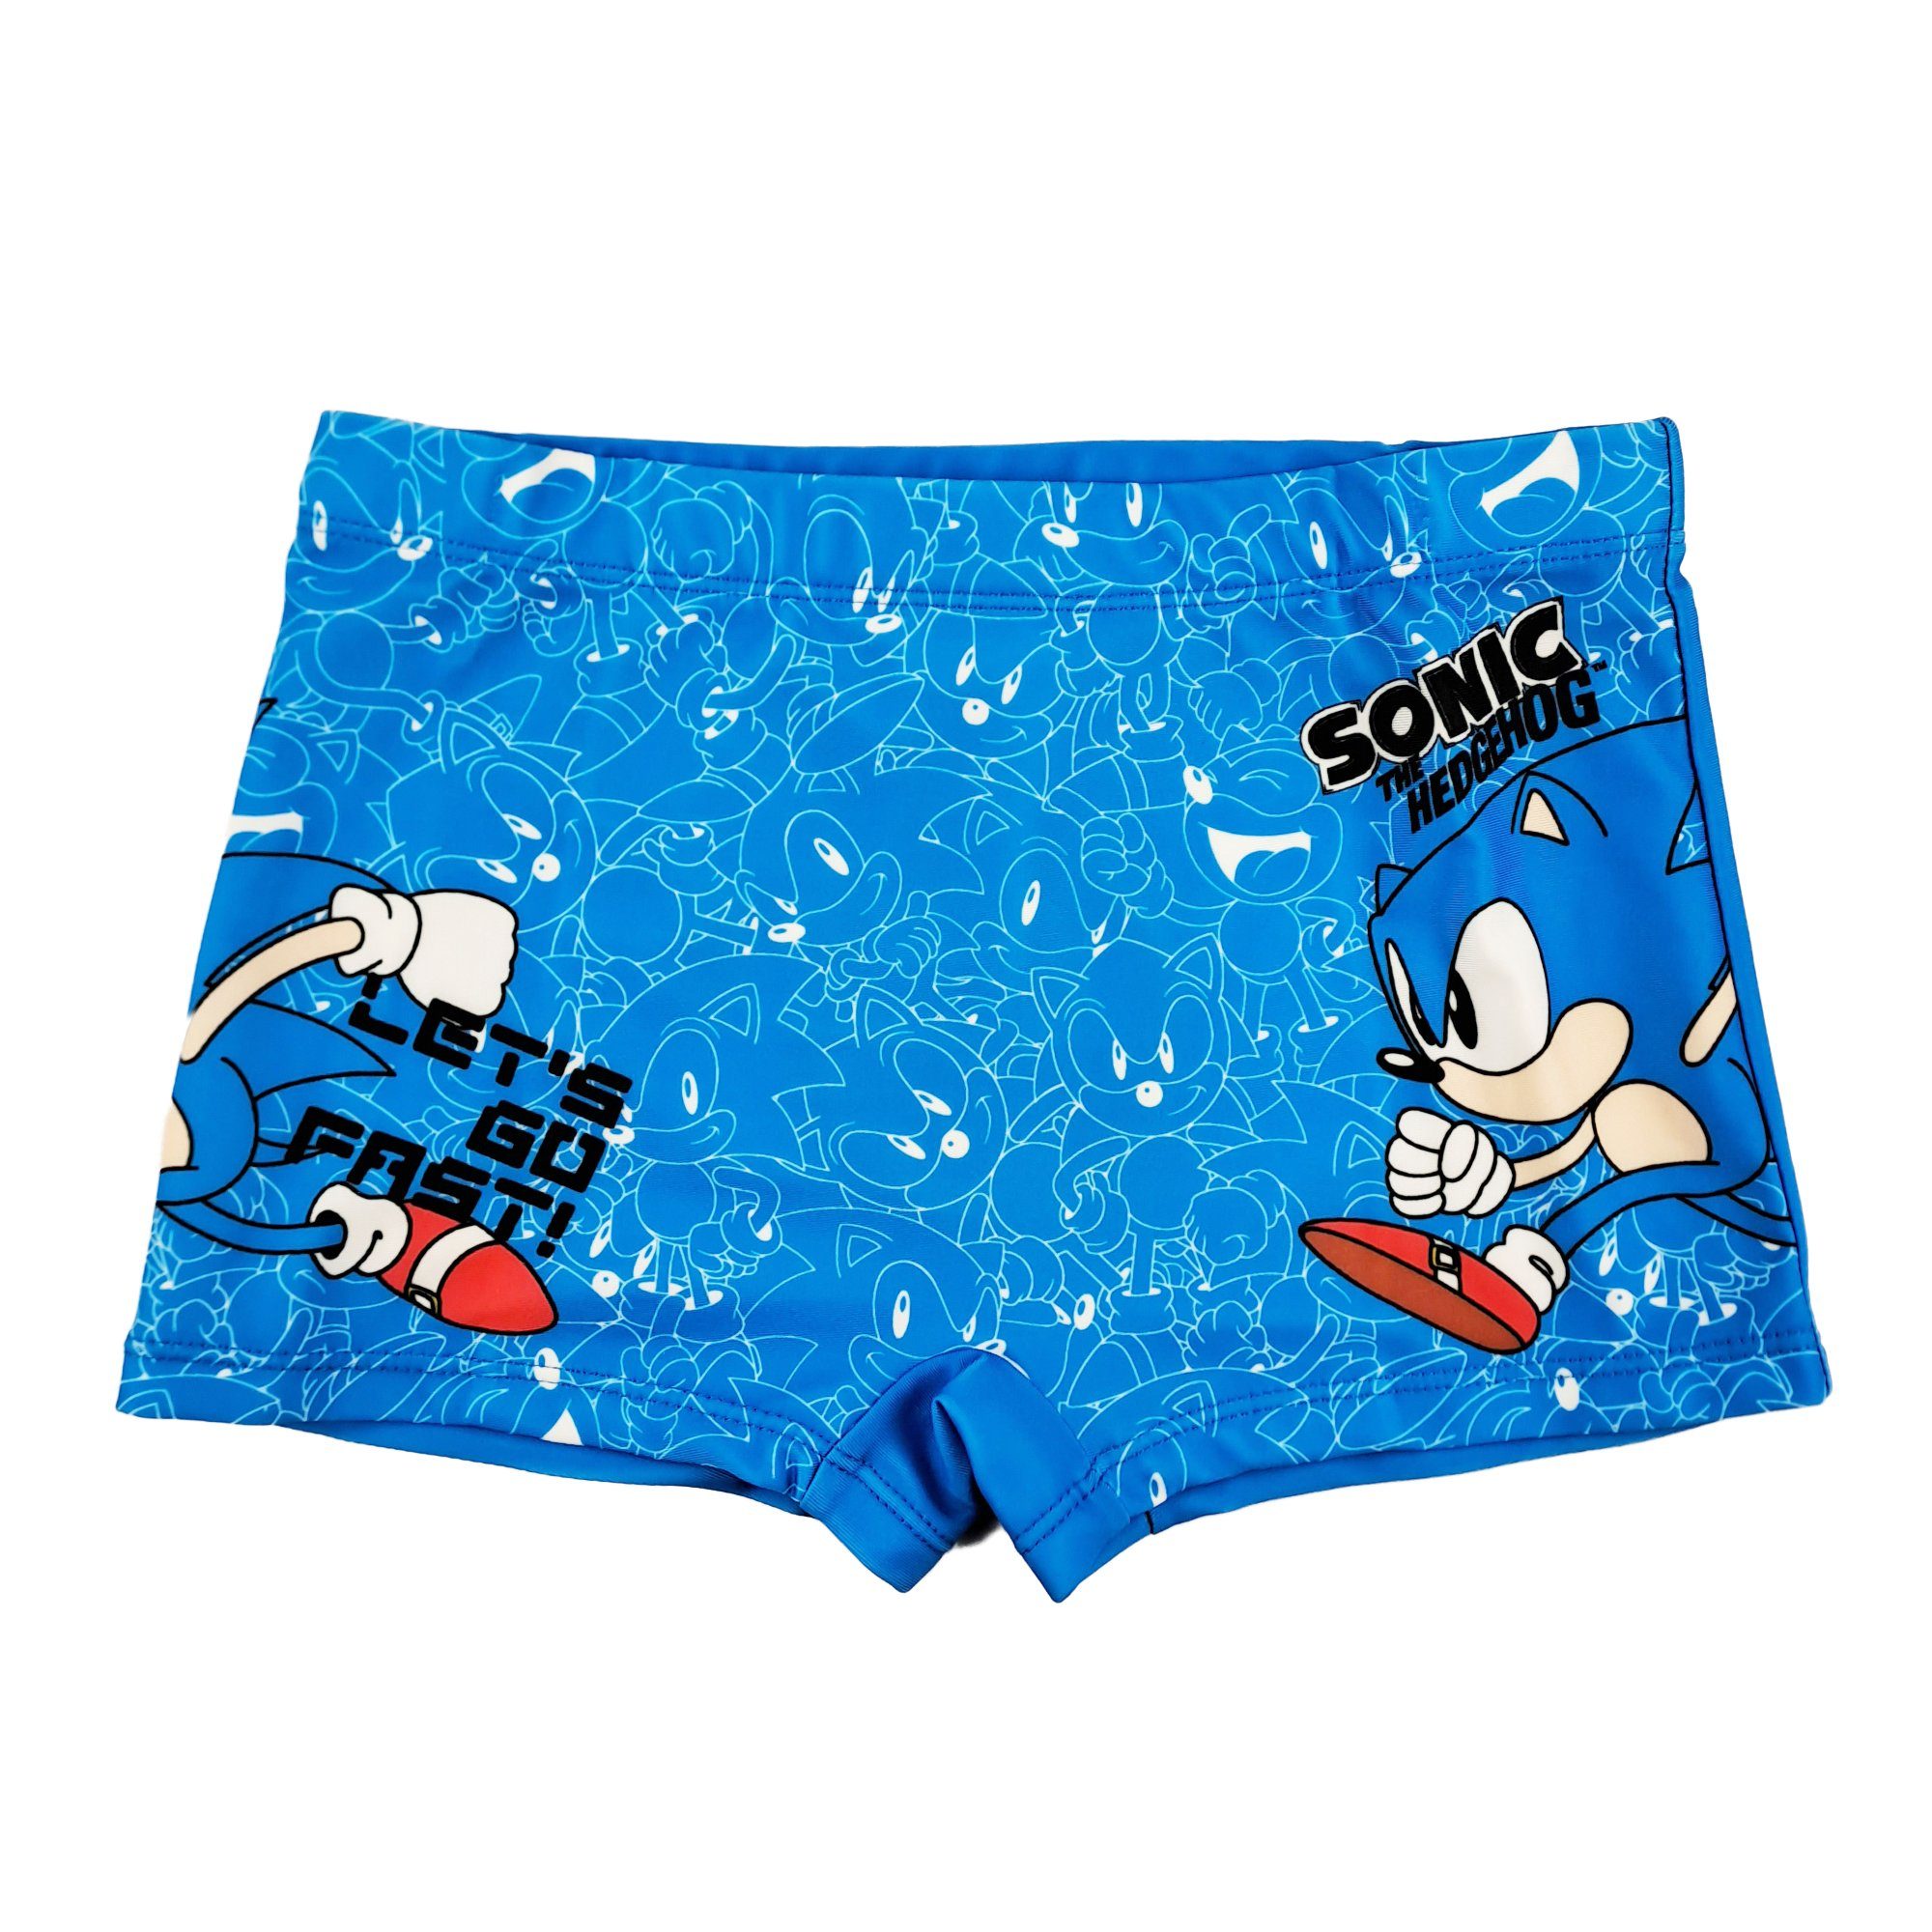 Sonic SEGA Badehose Sonic Kinder Jungen Badehose Gr. 92 bis 128 | Badeshorts